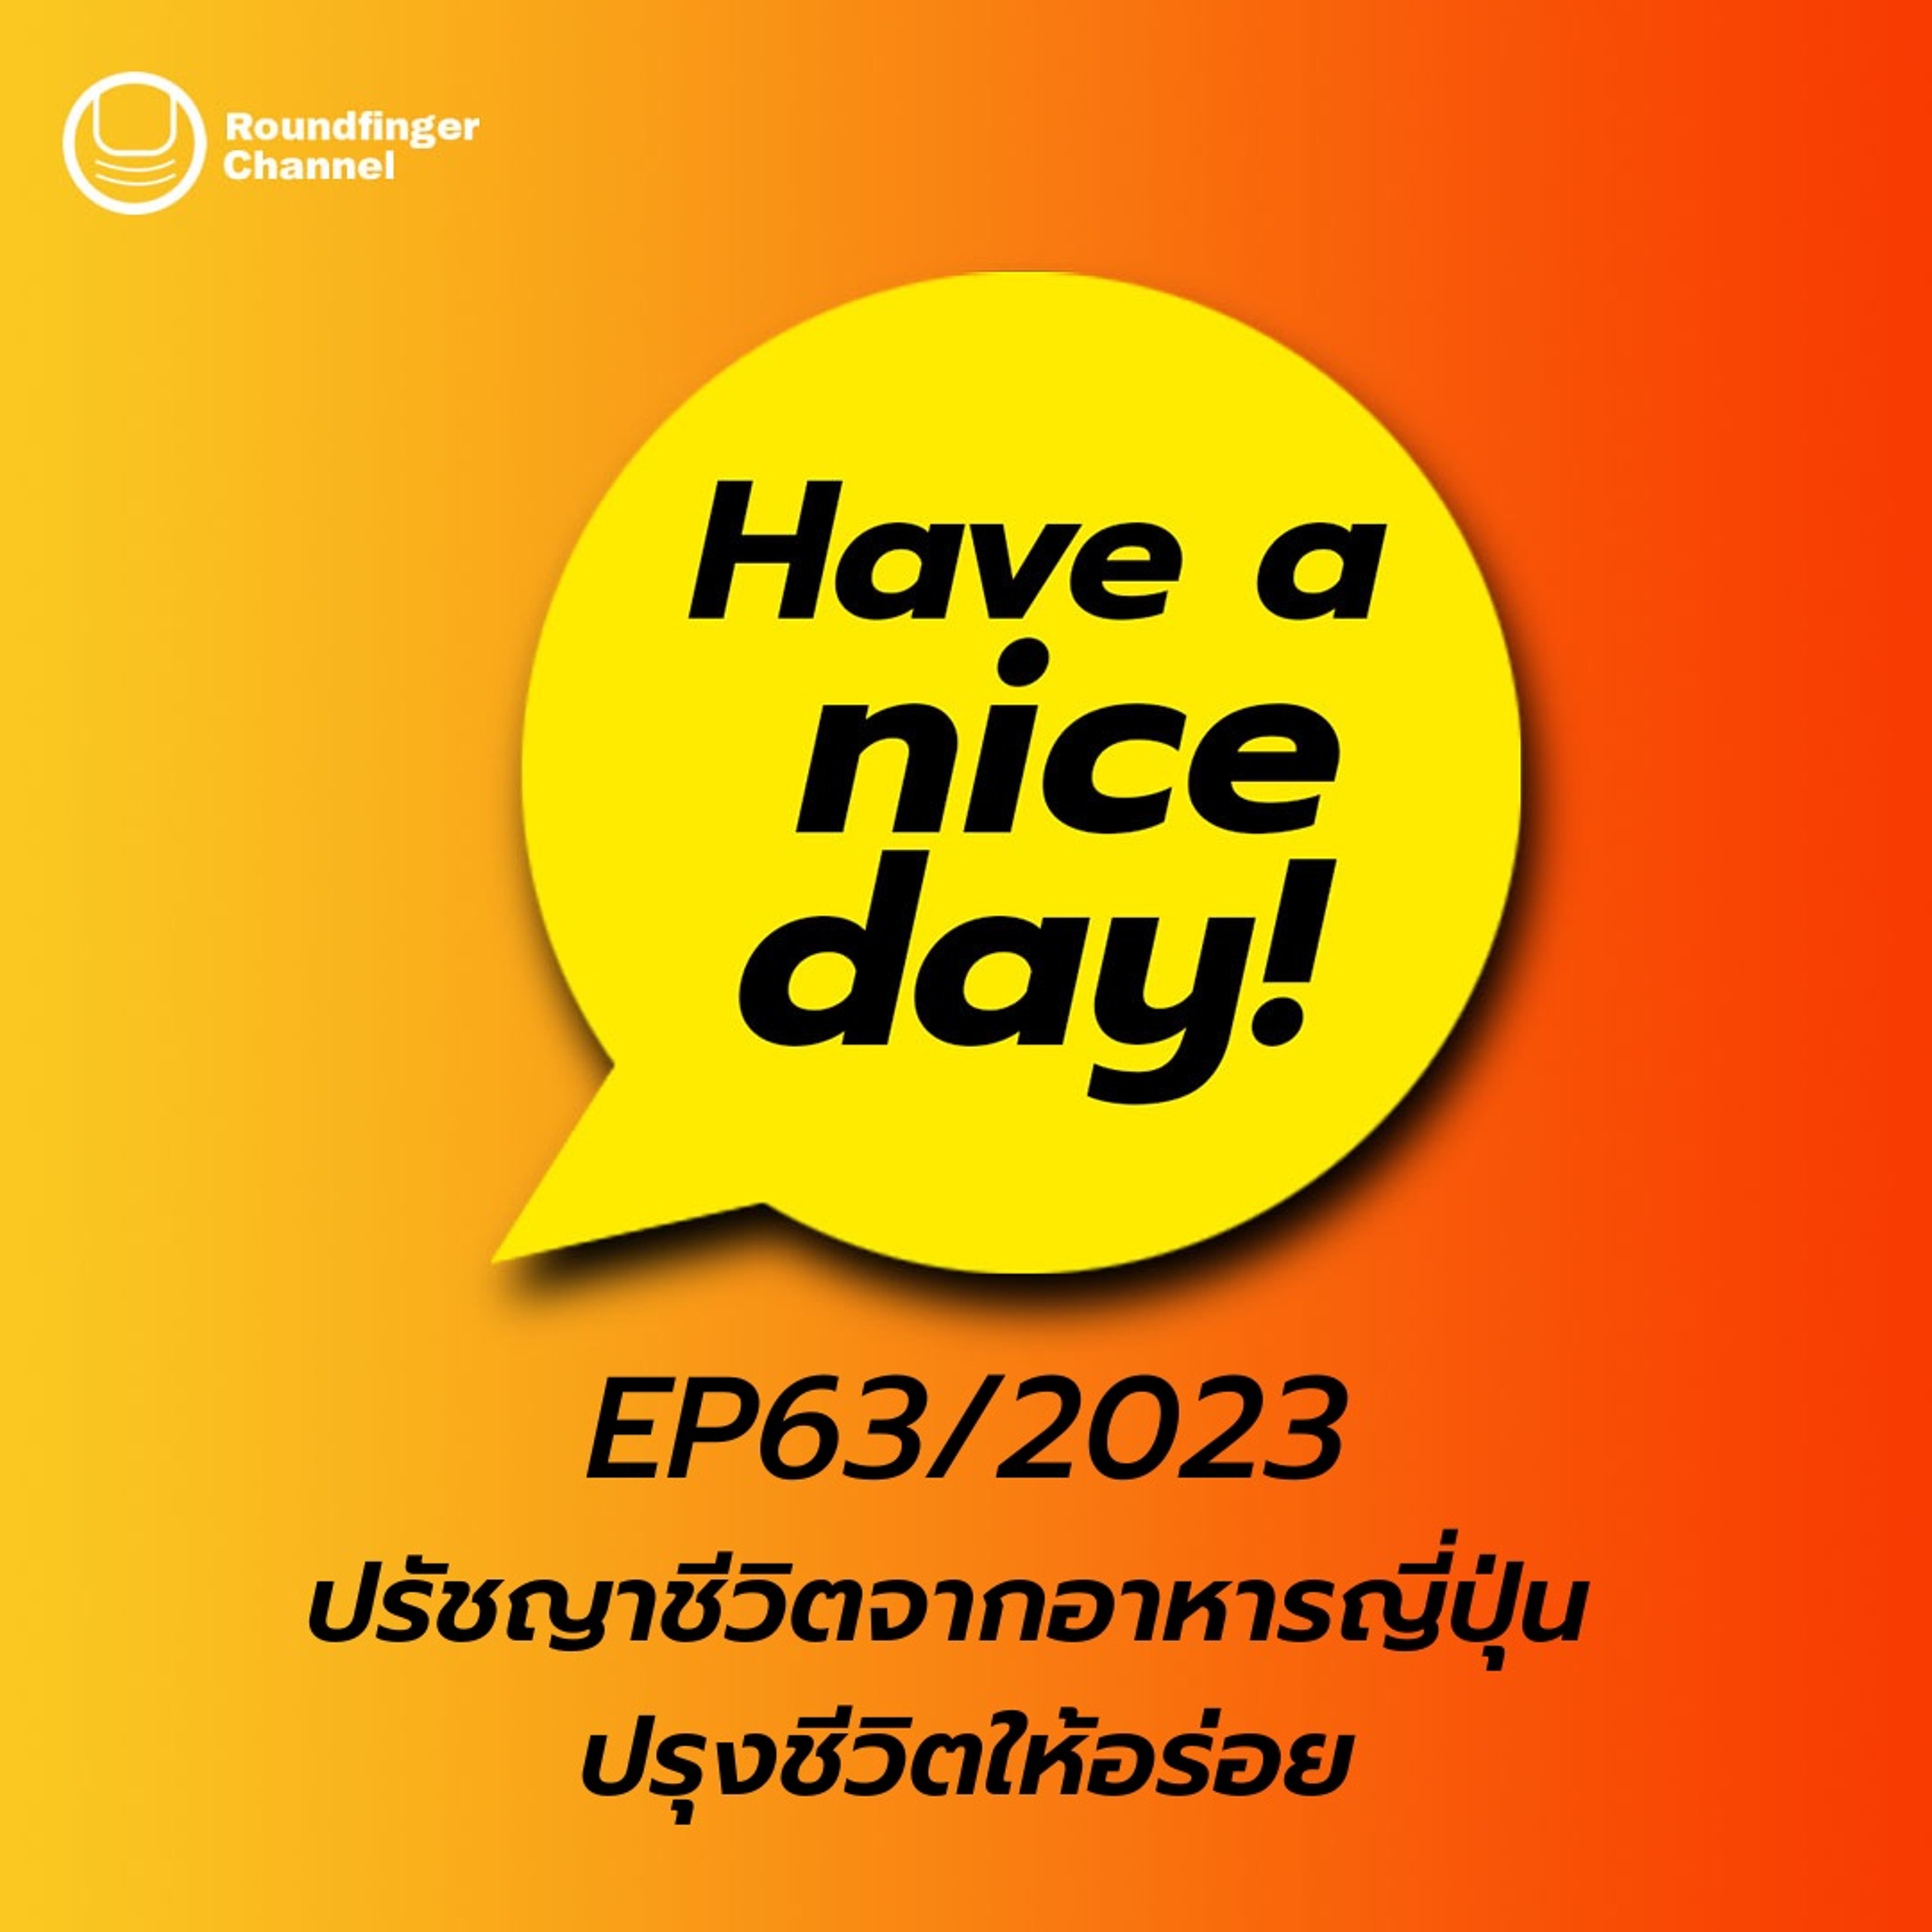 ปรัชญาชีวิตจากอาหารญี่ปุ่น ปรุงชีวิตให้อร่อย | Have A Nice Day! EP63/2023